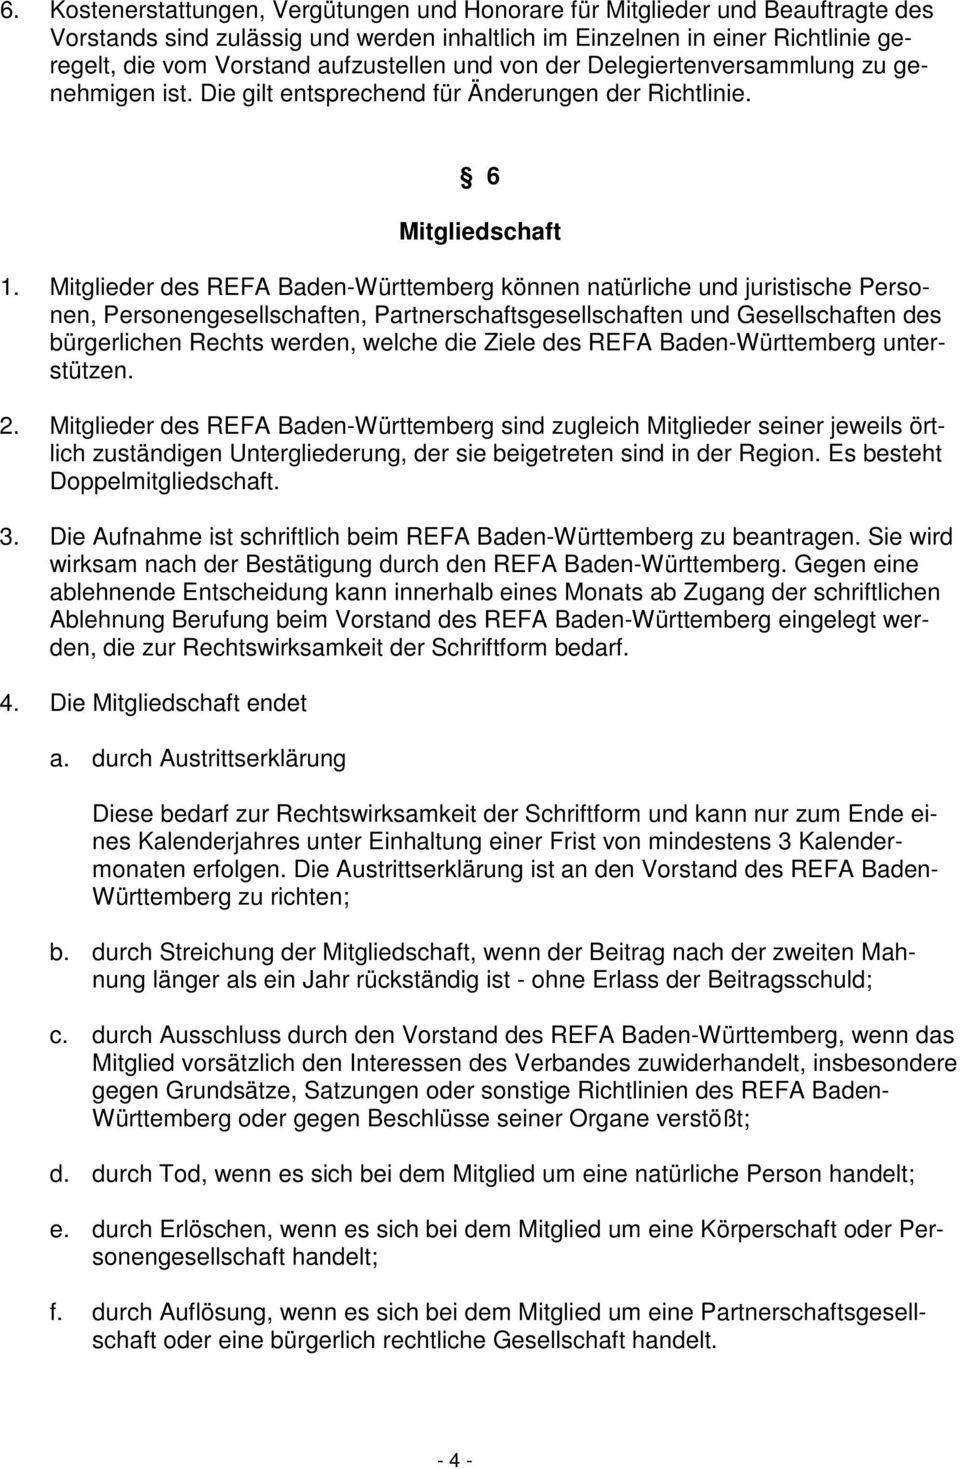 Mitglieder des REFA Baden-Württemberg können natürliche und juristische Personen, Personengesellschaften, Partnerschaftsgesellschaften und Gesellschaften des bürgerlichen Rechts werden, welche die